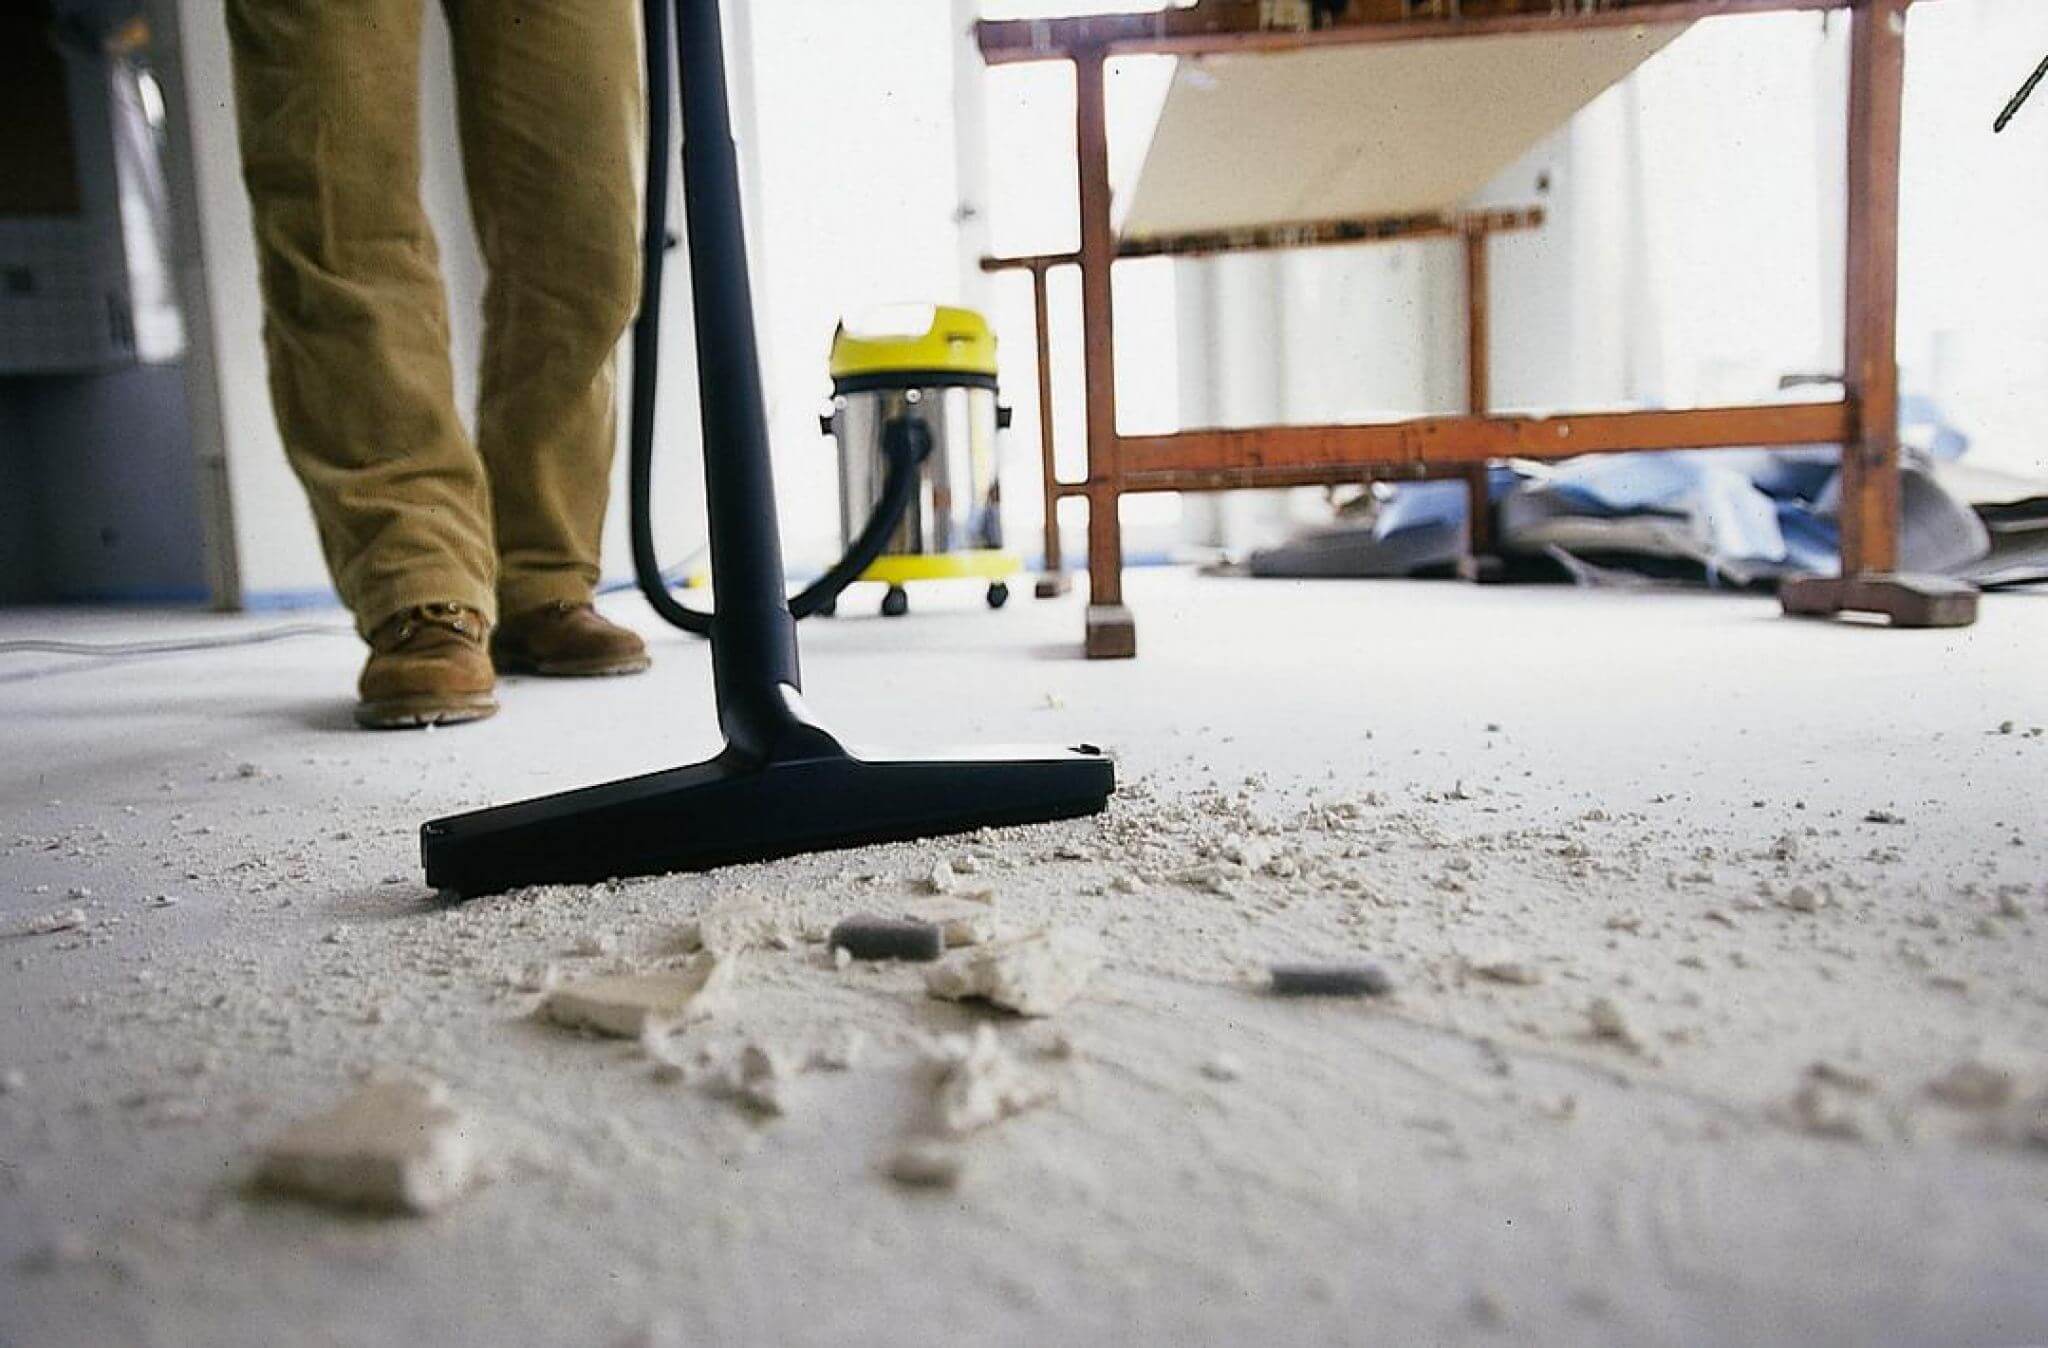 Как избавиться от пыли в квартире: во время и после ремонта